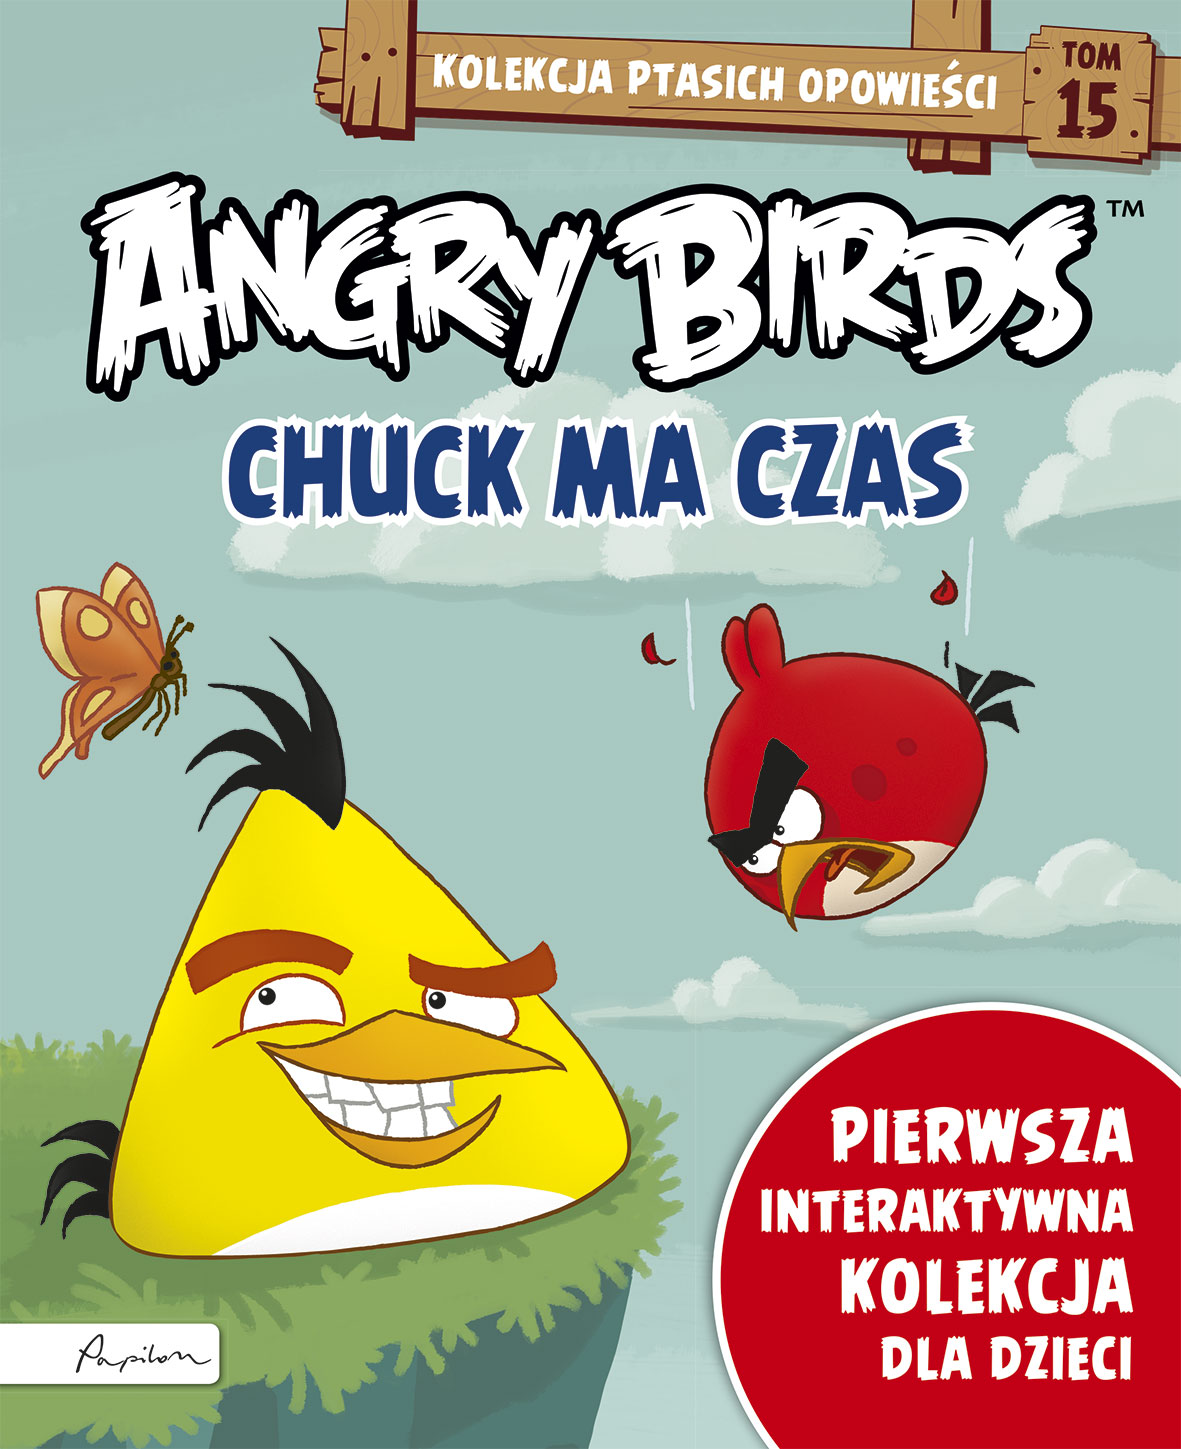 Angry Birds. Kolekcja ptasich opowieści 15. Chuck ma czas 